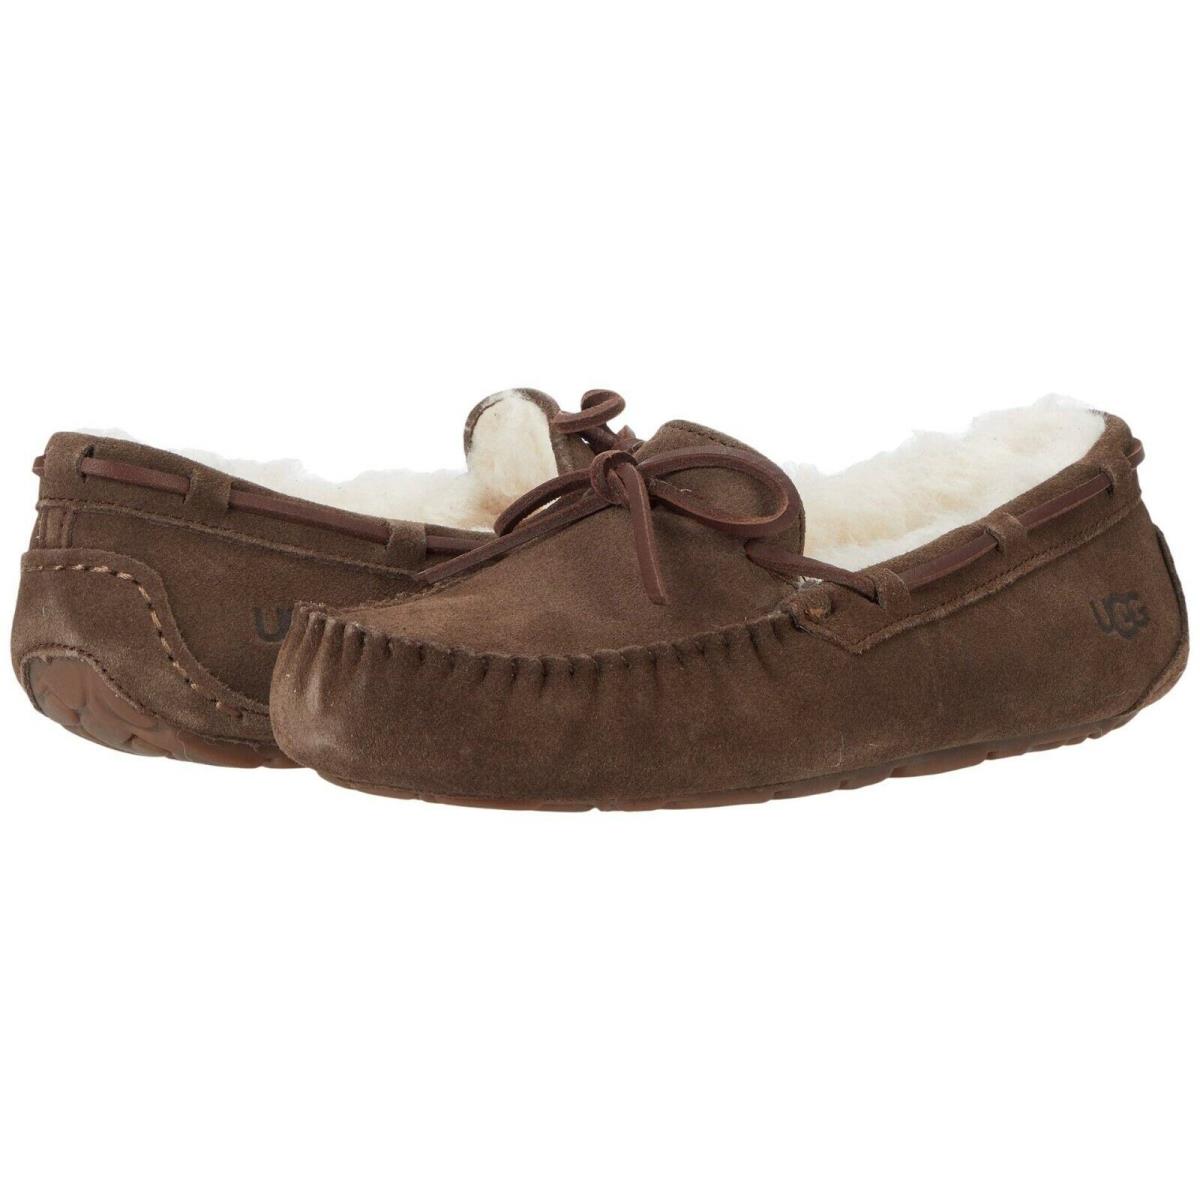 Women`s Shoes Ugg Dakota Suede Indoor/outdoor Moccasin Slippers 1107949 Espresso - Brown